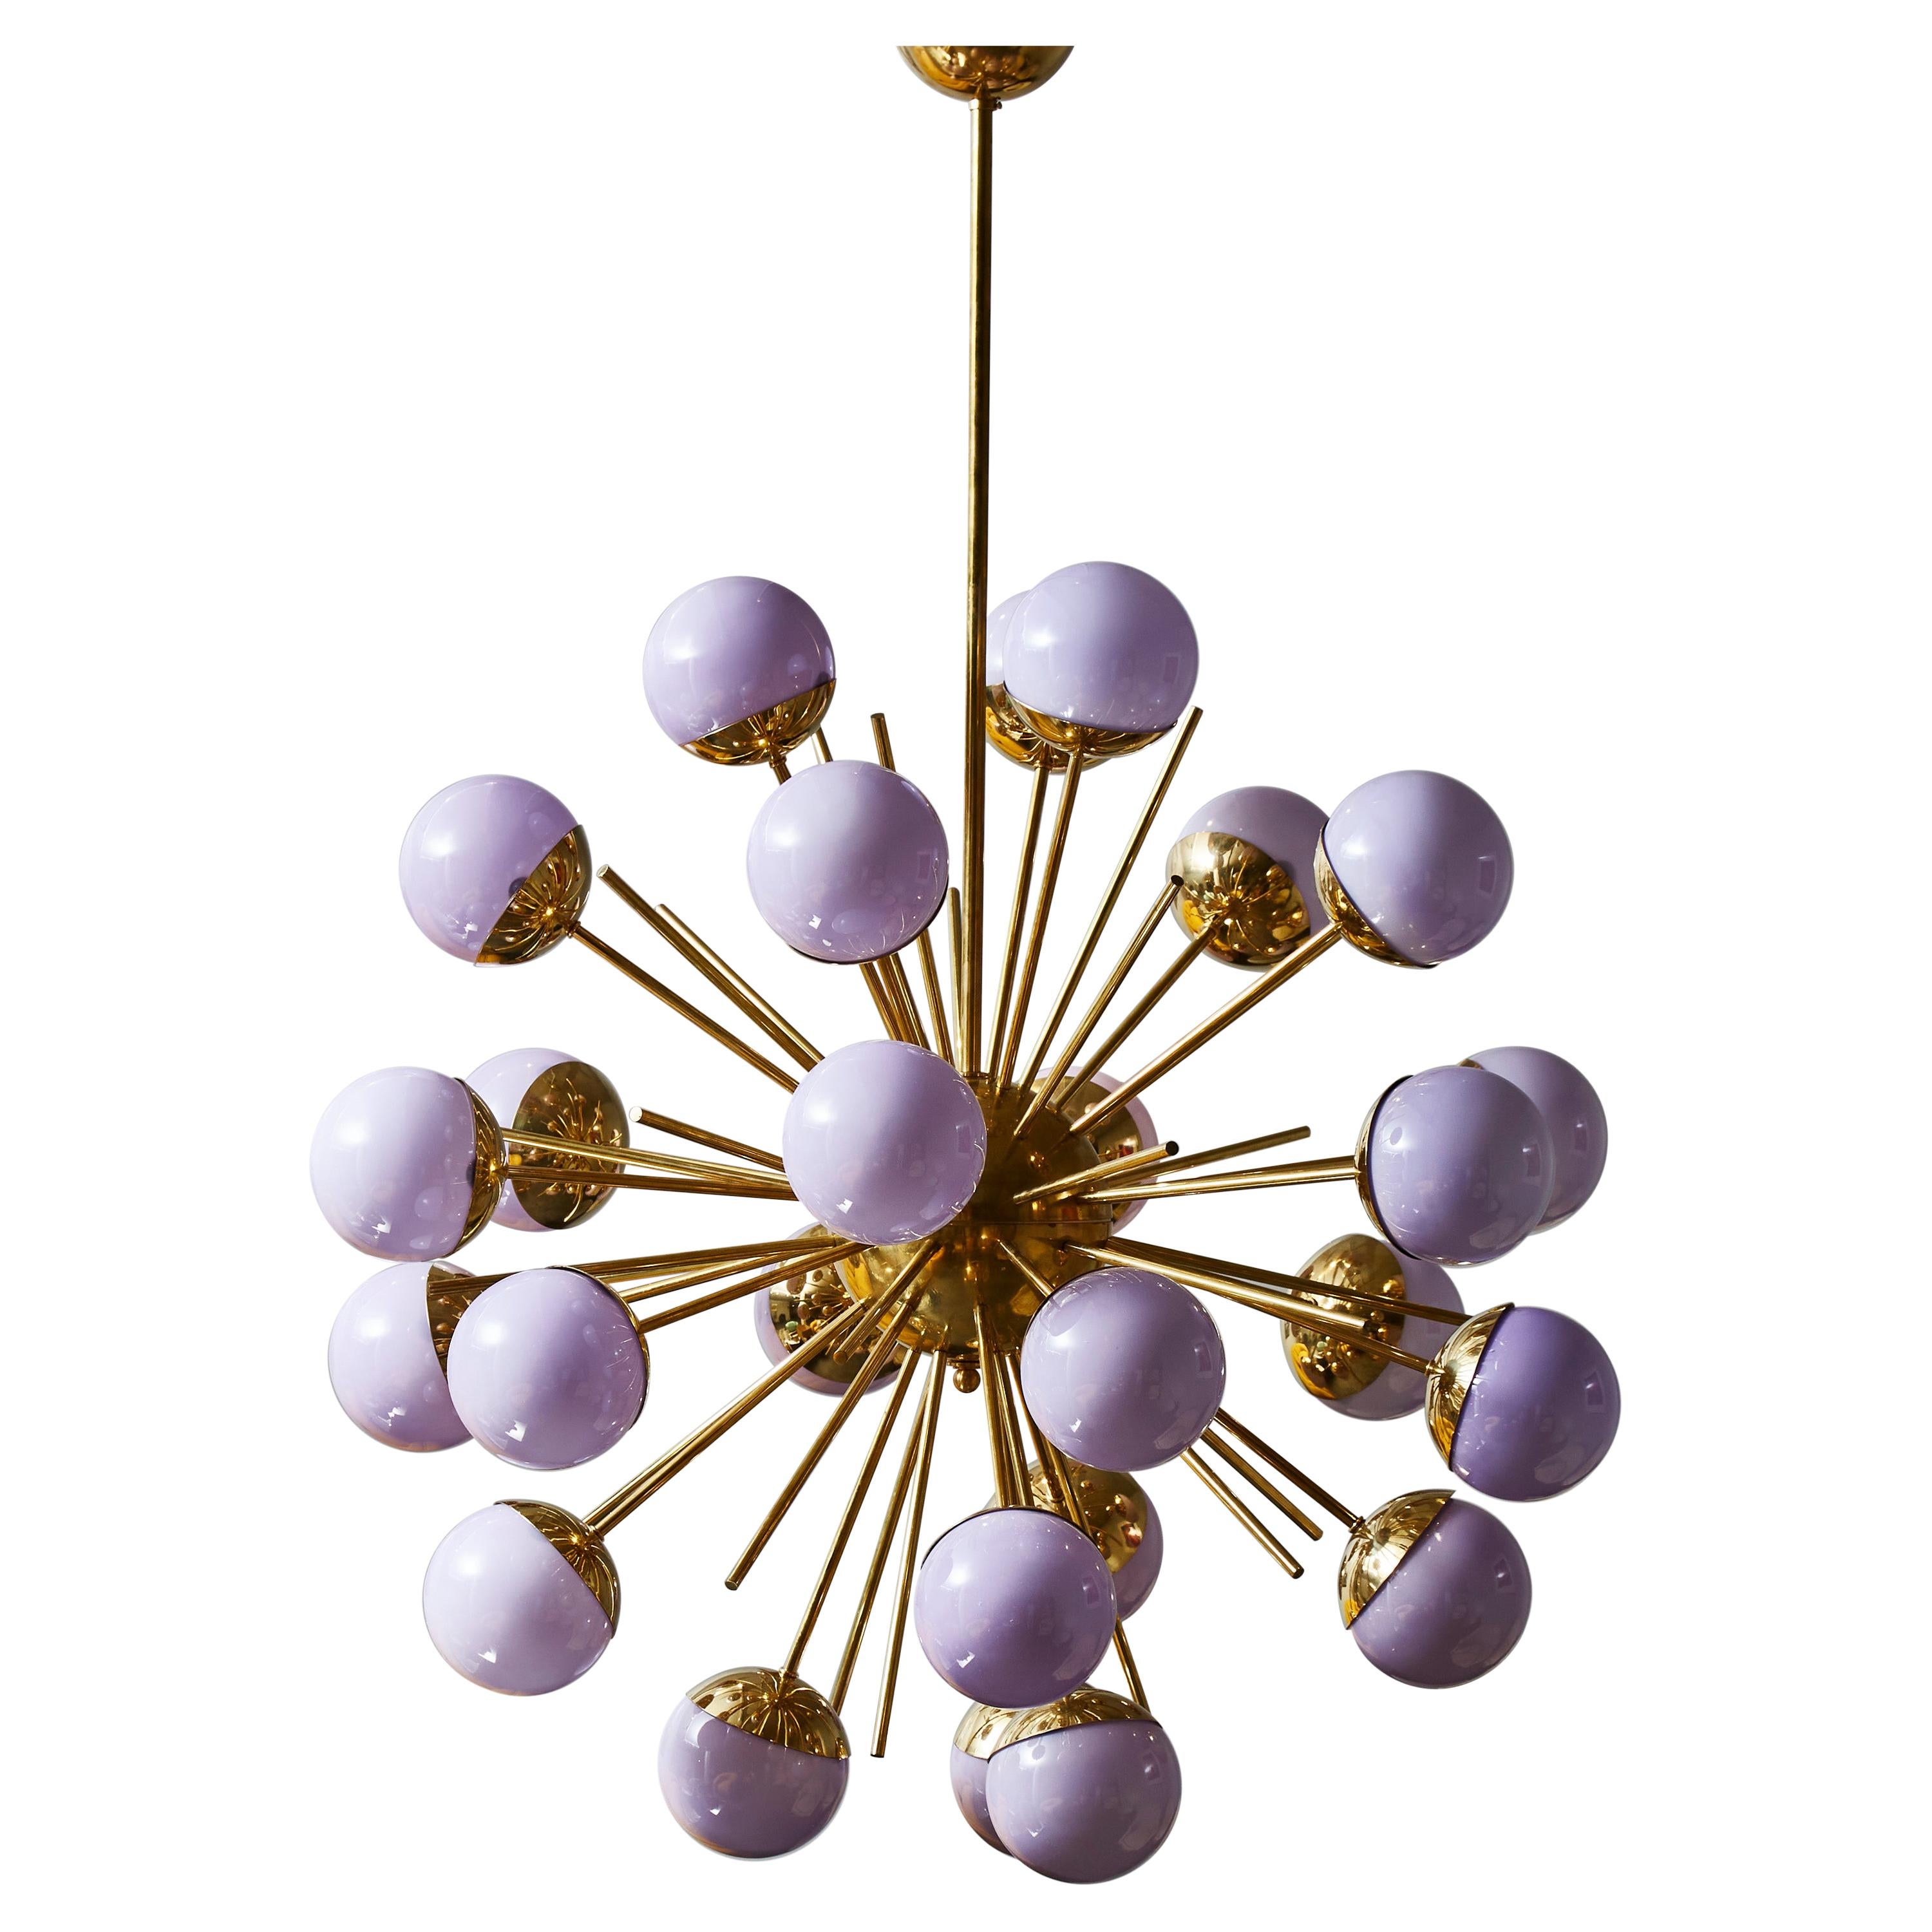 Brass Sputnik Chandelier with Lilac Glass Globes